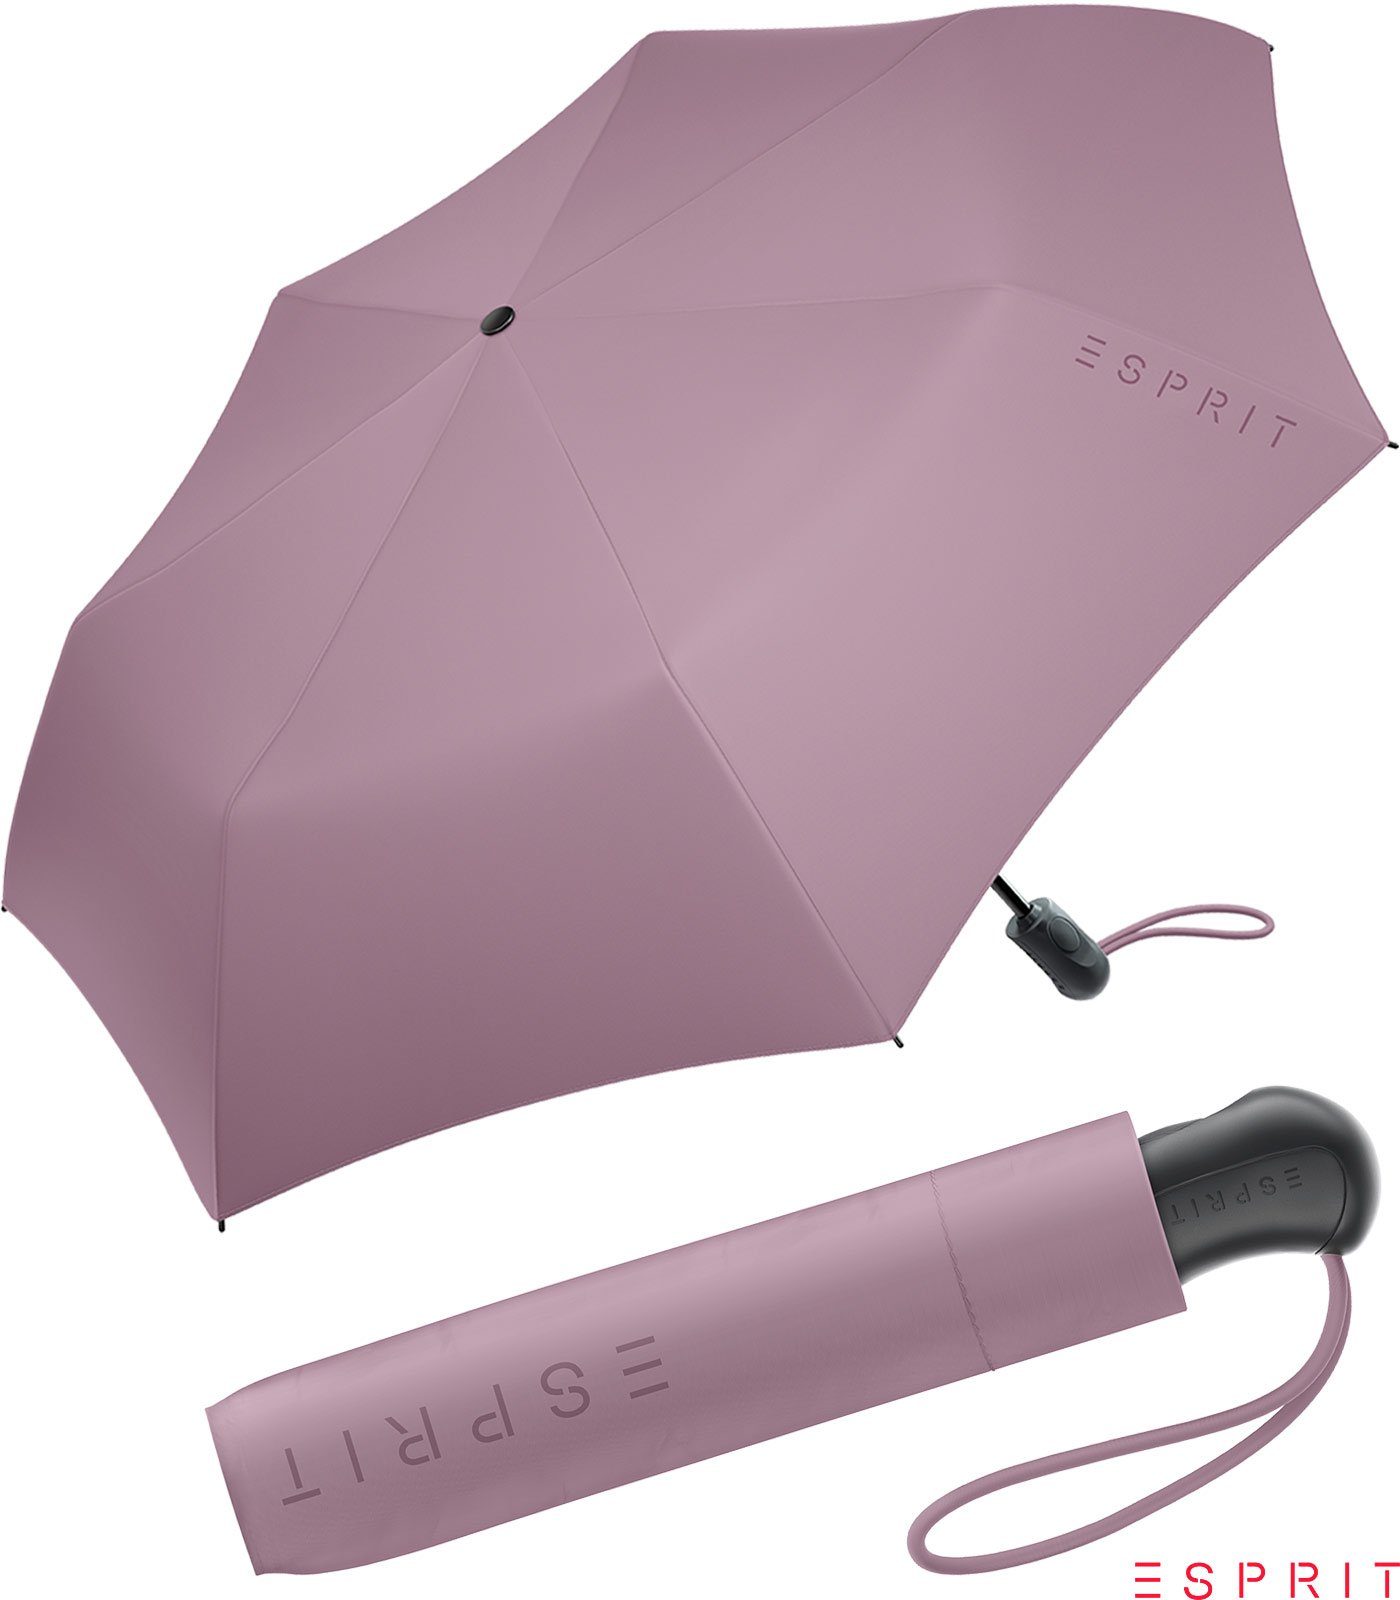 Esprit Taschenregenschirm Damen Easymatic Light Auf-Zu Automatik HW 2022 - dusky orchid, stabil, praktisch, in den neuen Trendfarben berry